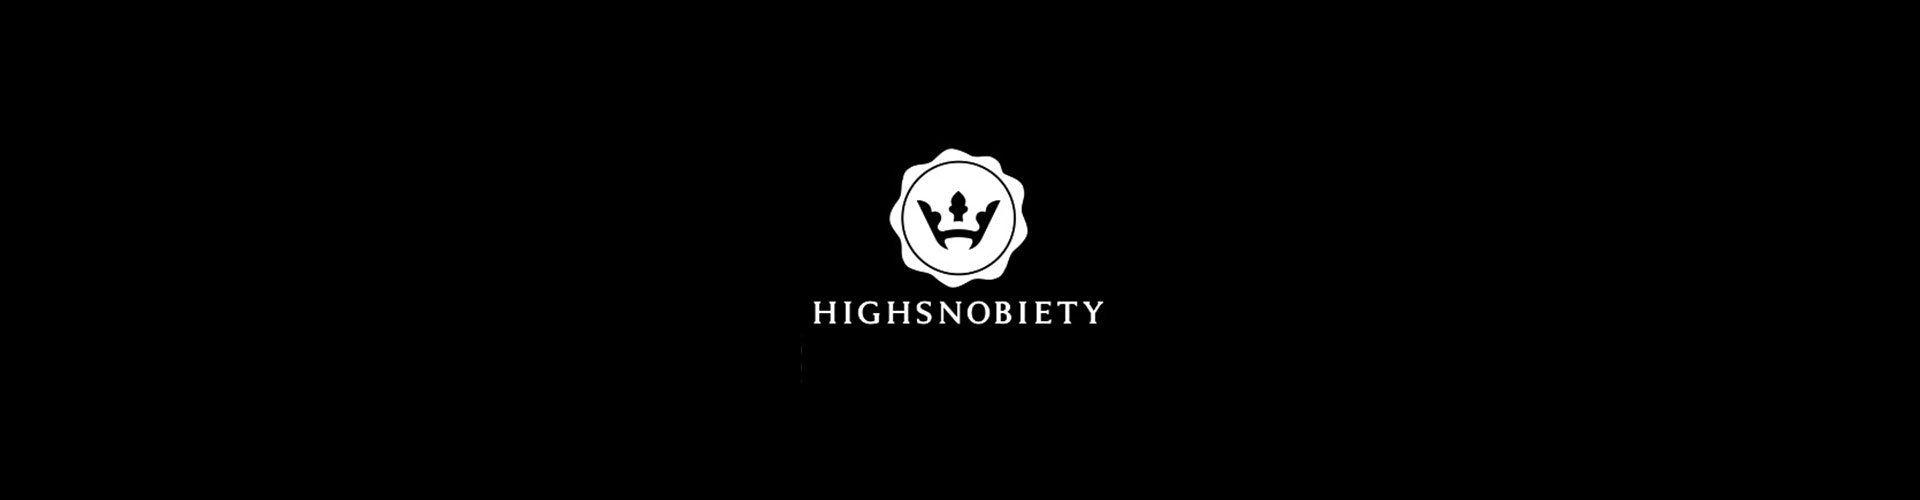 Highsnobiety Logo - Highsnobiety at CROSSOVER – CROSSOVER ONLINE